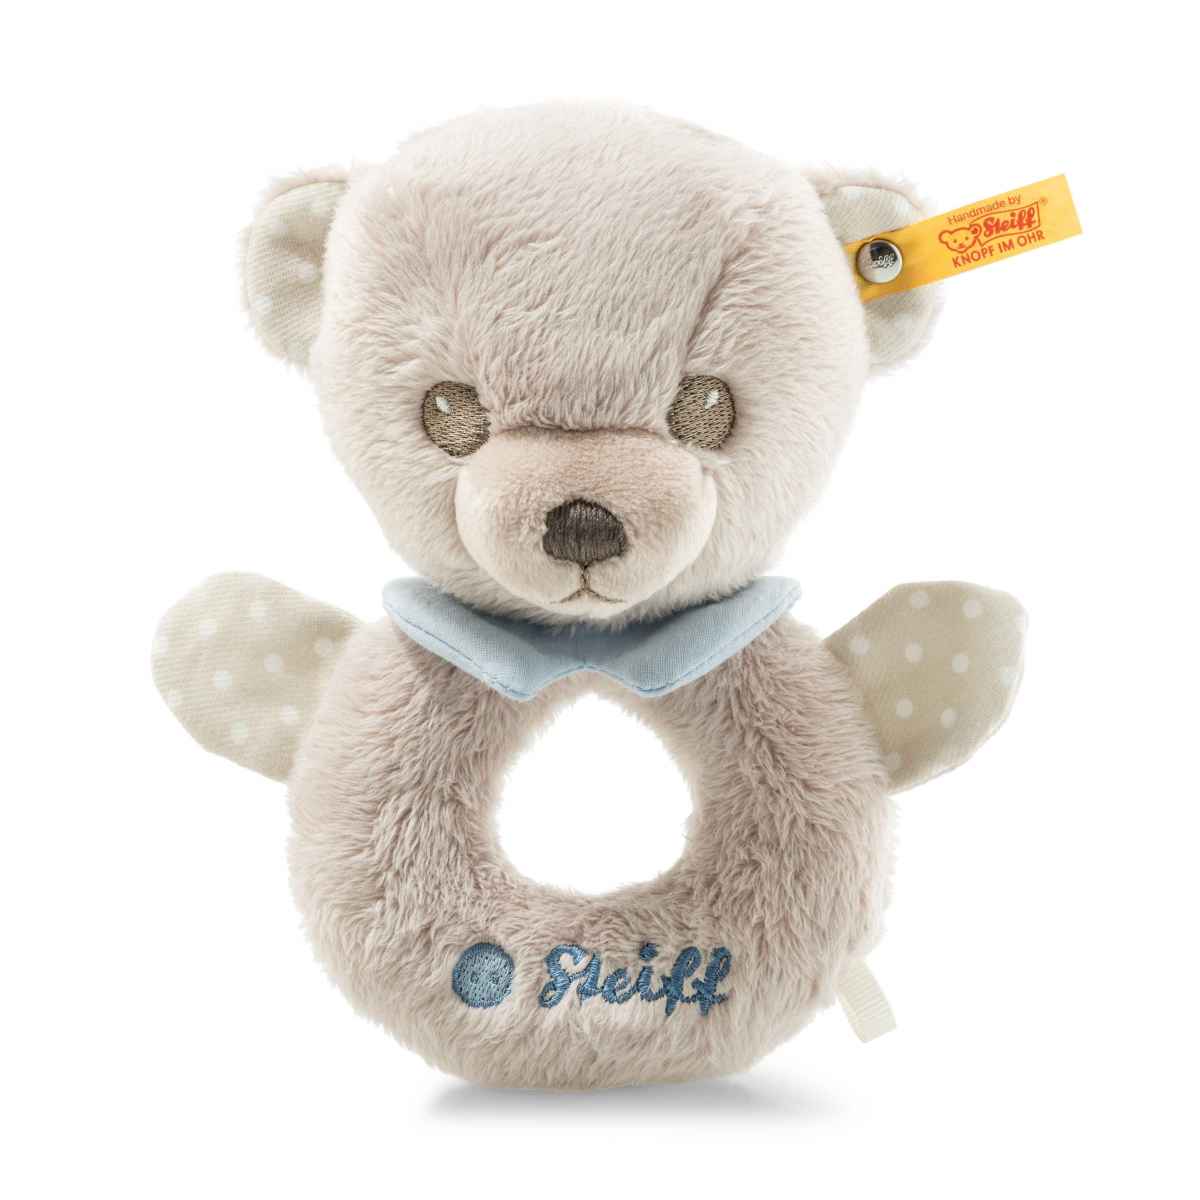 Погремушка Steiff Hello Baby Levi Teddy bear grip toy with rattle in gift box Штайф Мишка